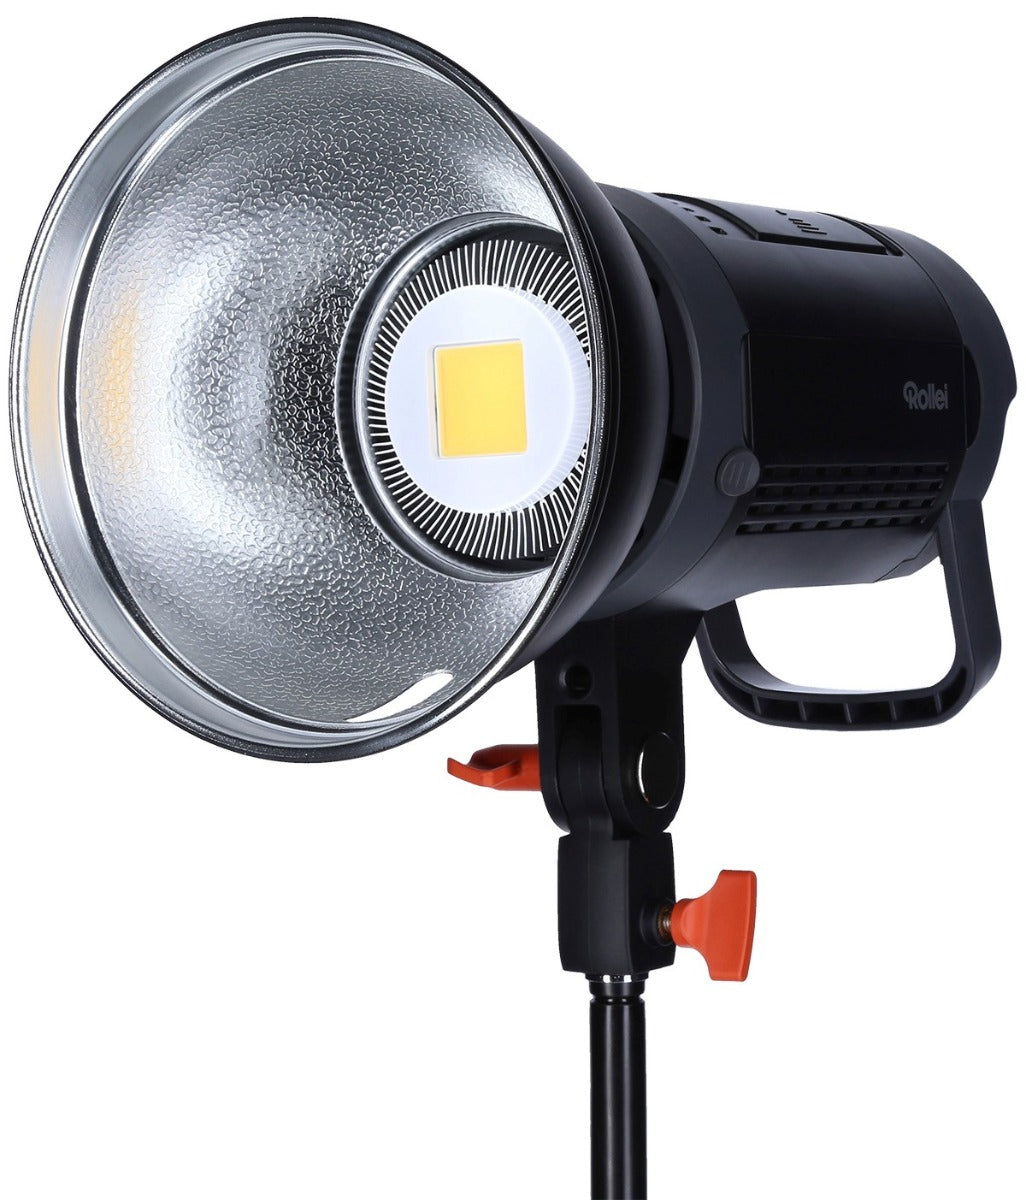 Produktfoto Soluna II-60 Dauerlicht LED